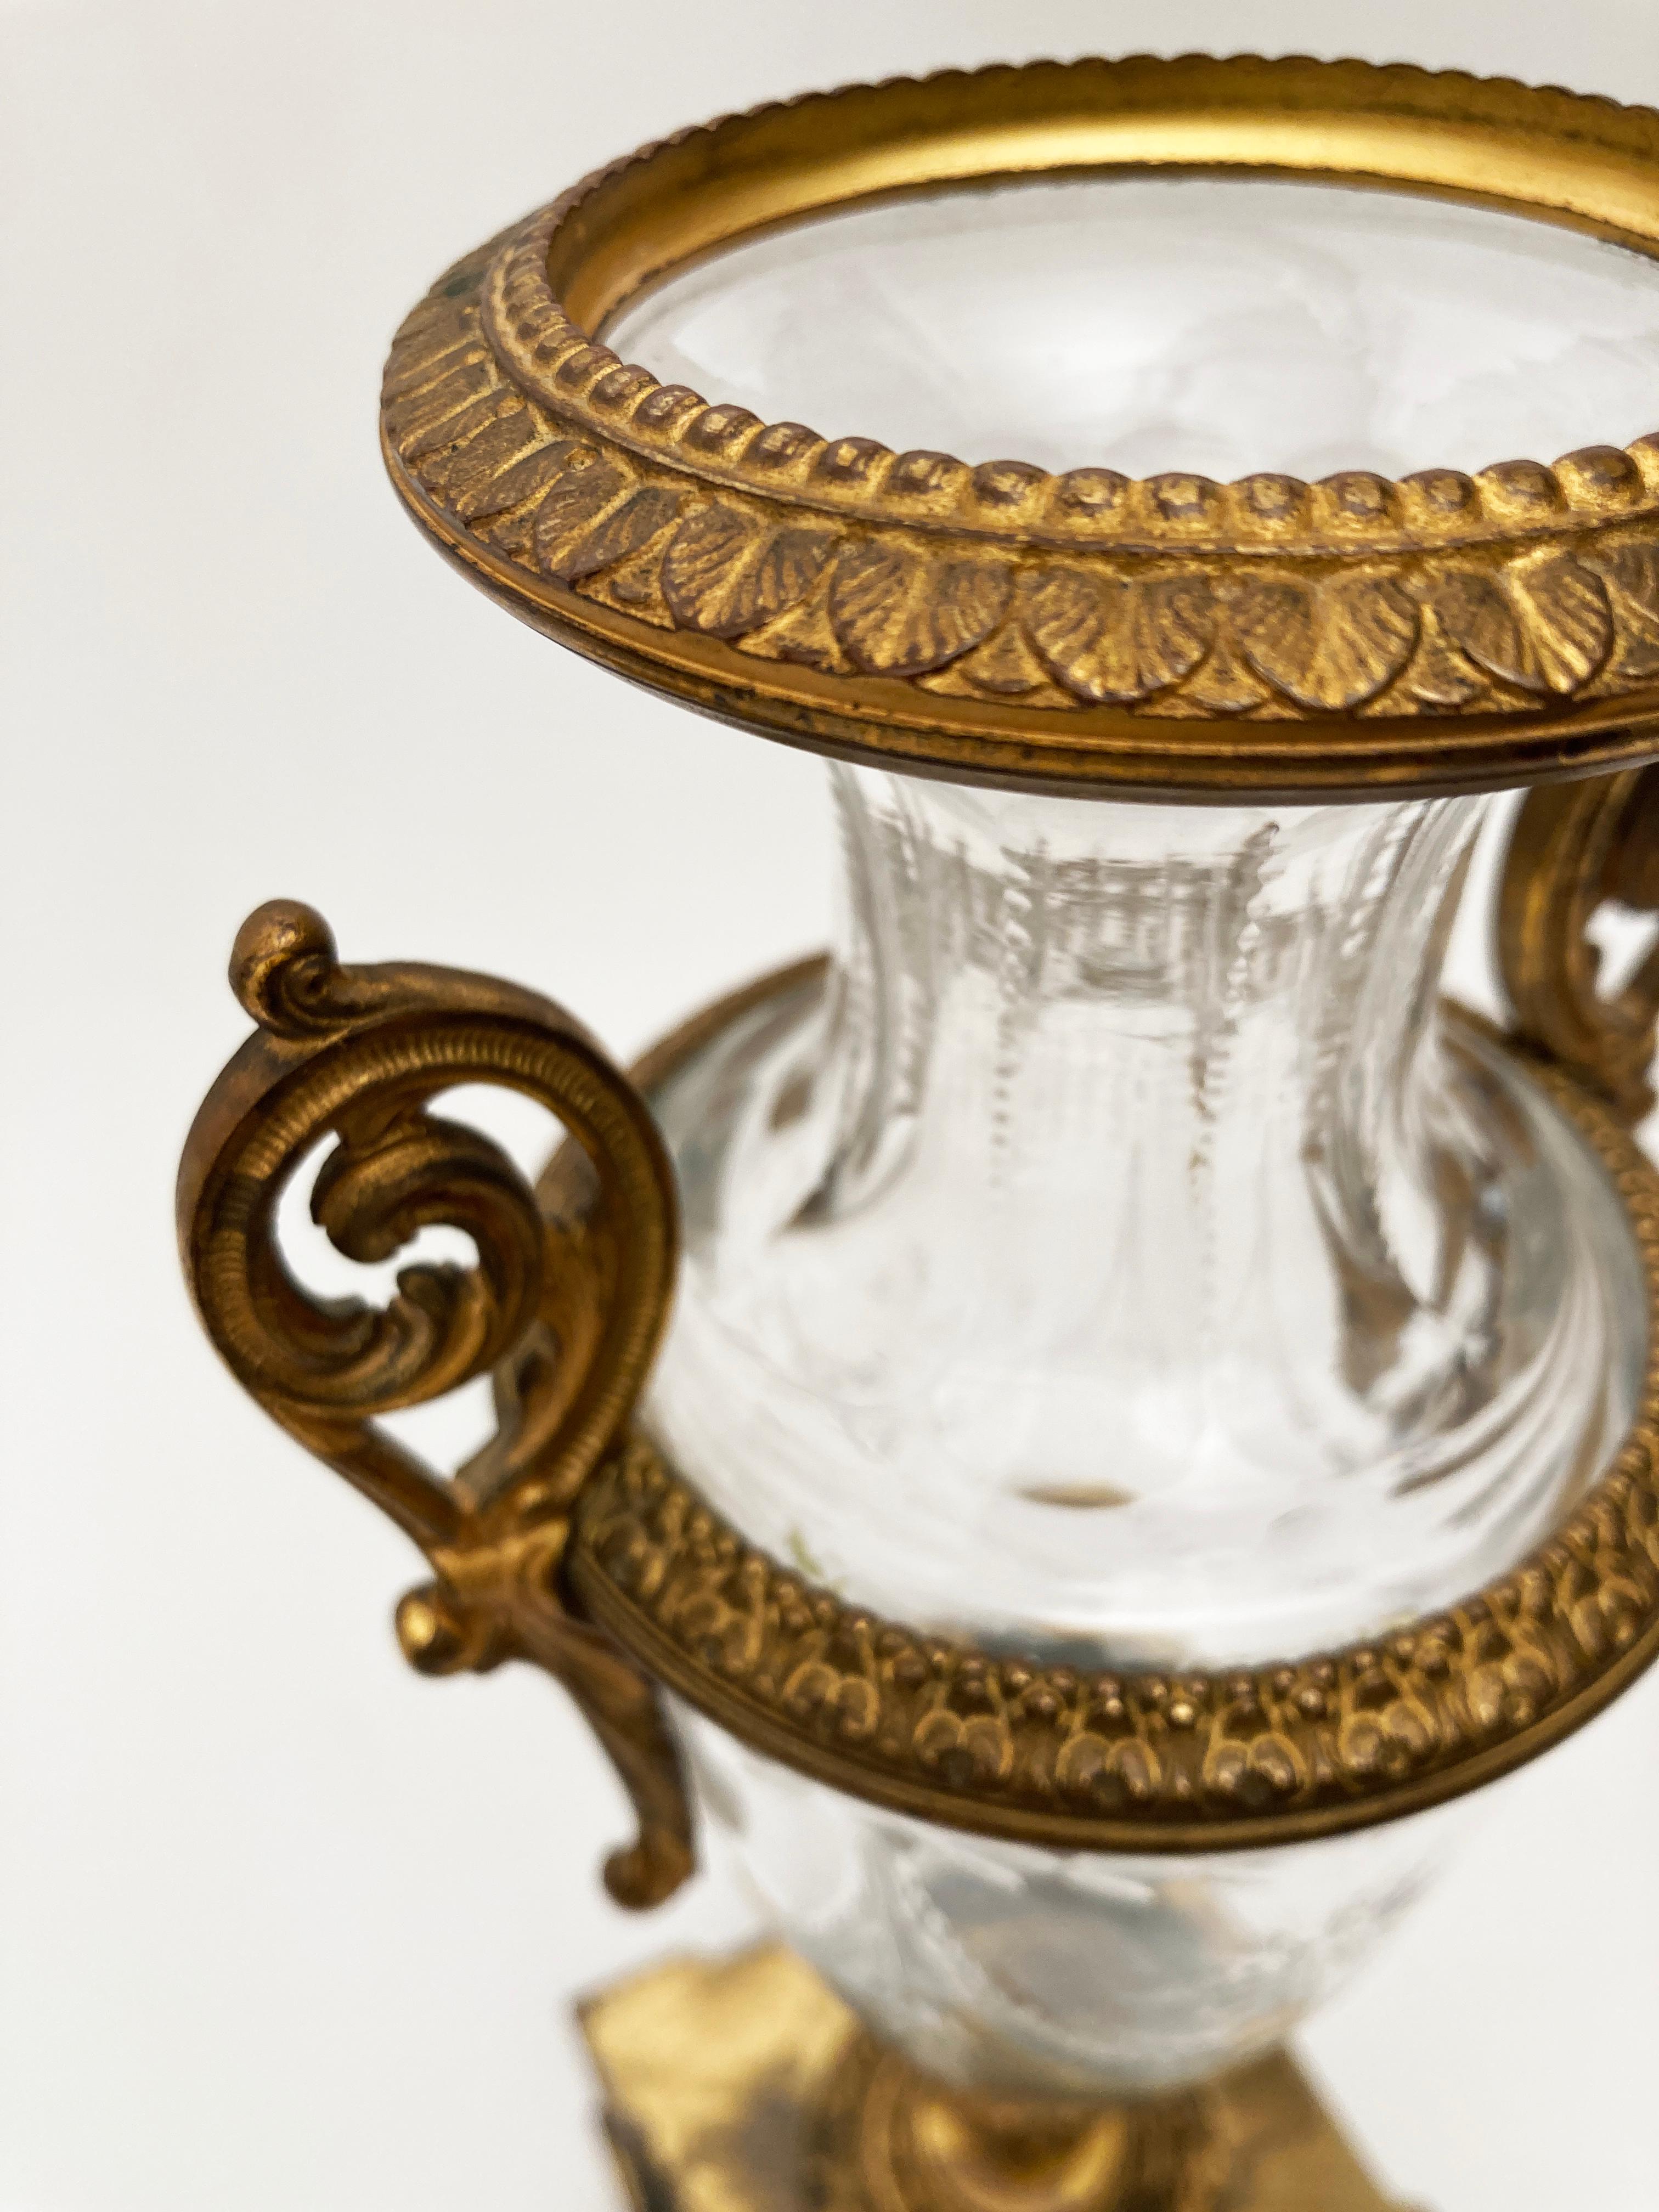 Les artisans français du XIXe siècle savaient comment concevoir une beauté classique durable. Cette extraordinaire paire d'urnes françaises témoigne de la maîtrise de la conception et de la construction. De l'urne taillée dans le cristal, avec son